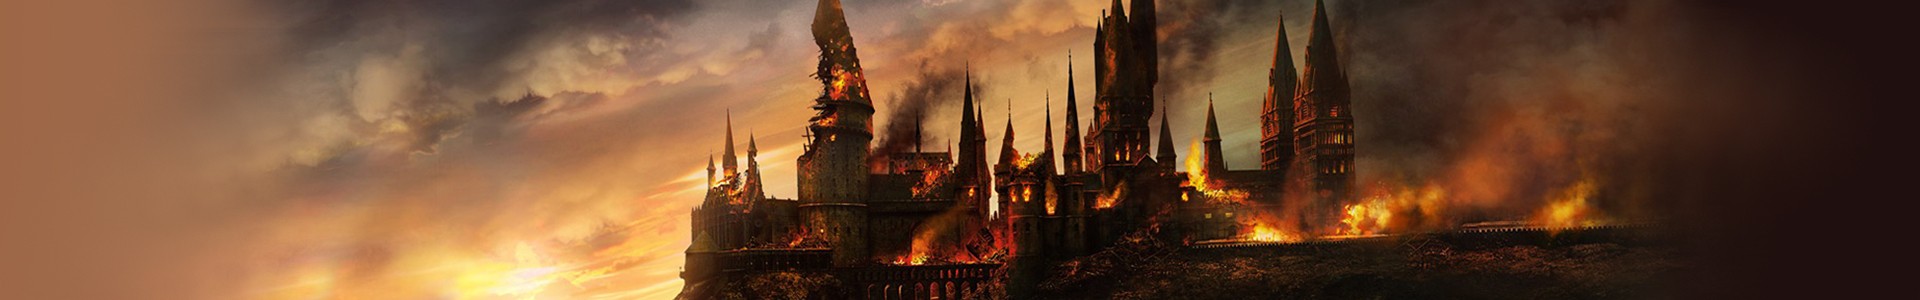 15 Fatos assustadores que você nunca percebeu em Harry Potter